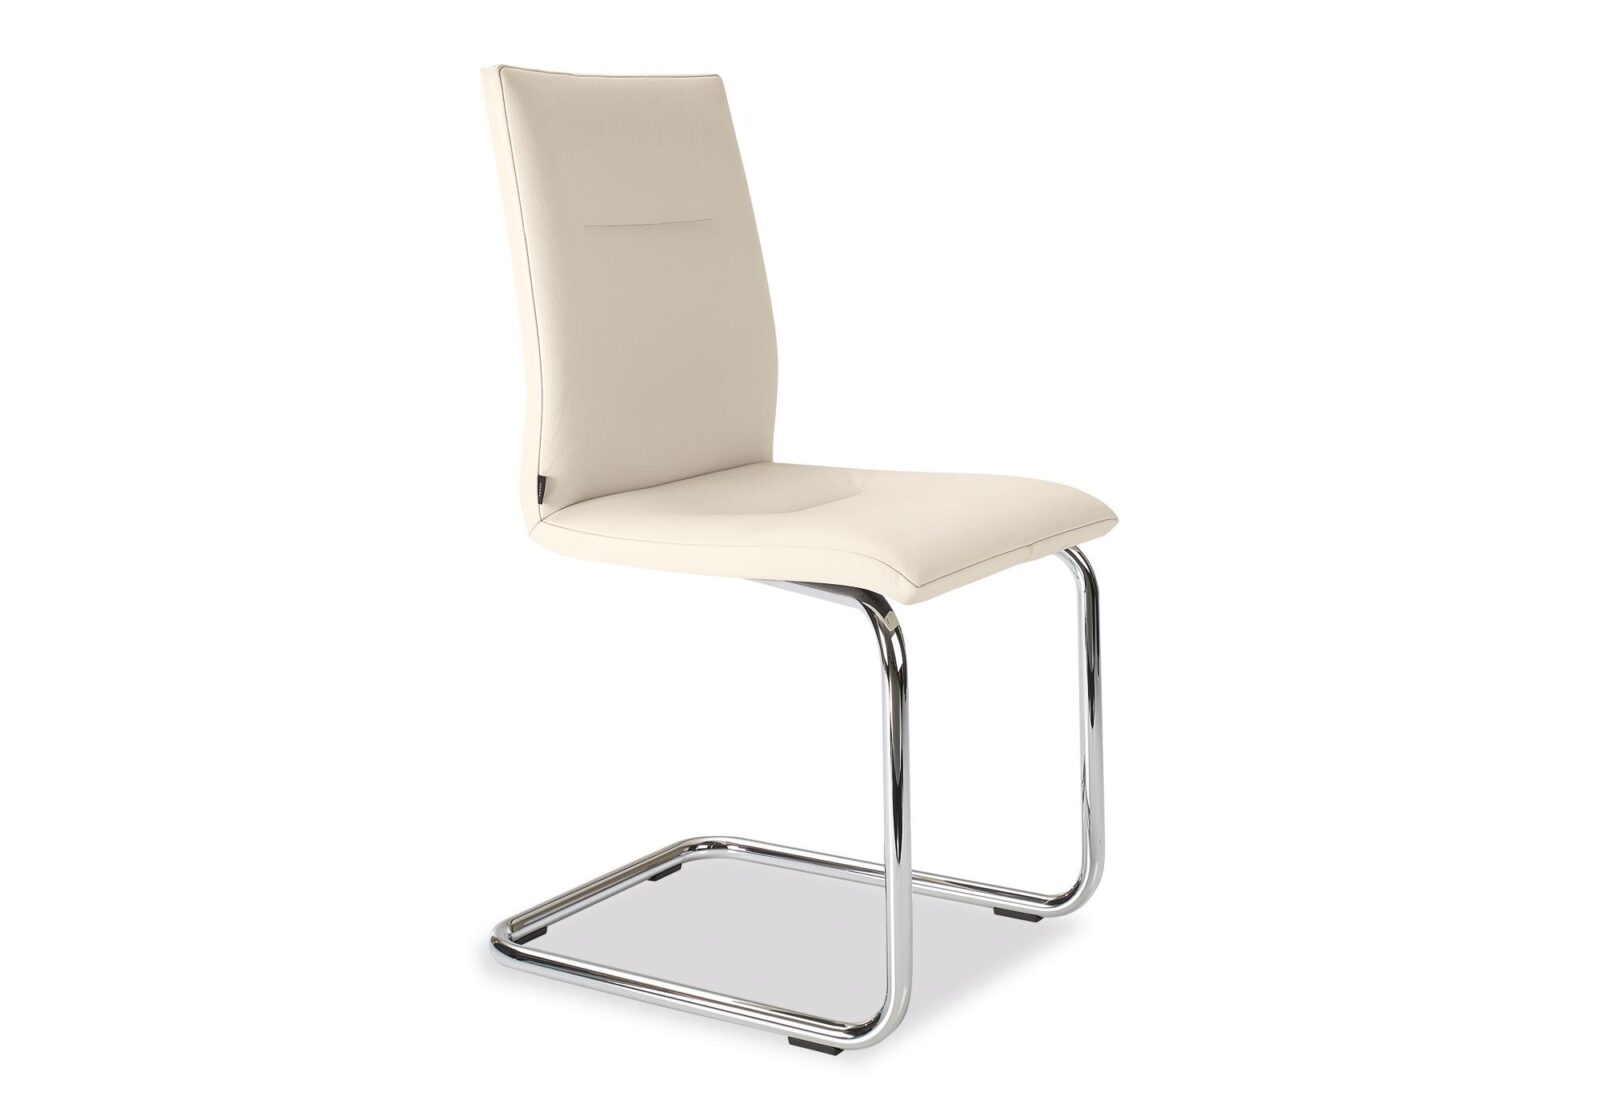 Freischwinger Stuhl Mona. Schweizer Qualität. Bezug: Leder. Farbe: Beige. Erhältlich bei Möbel Gallati.